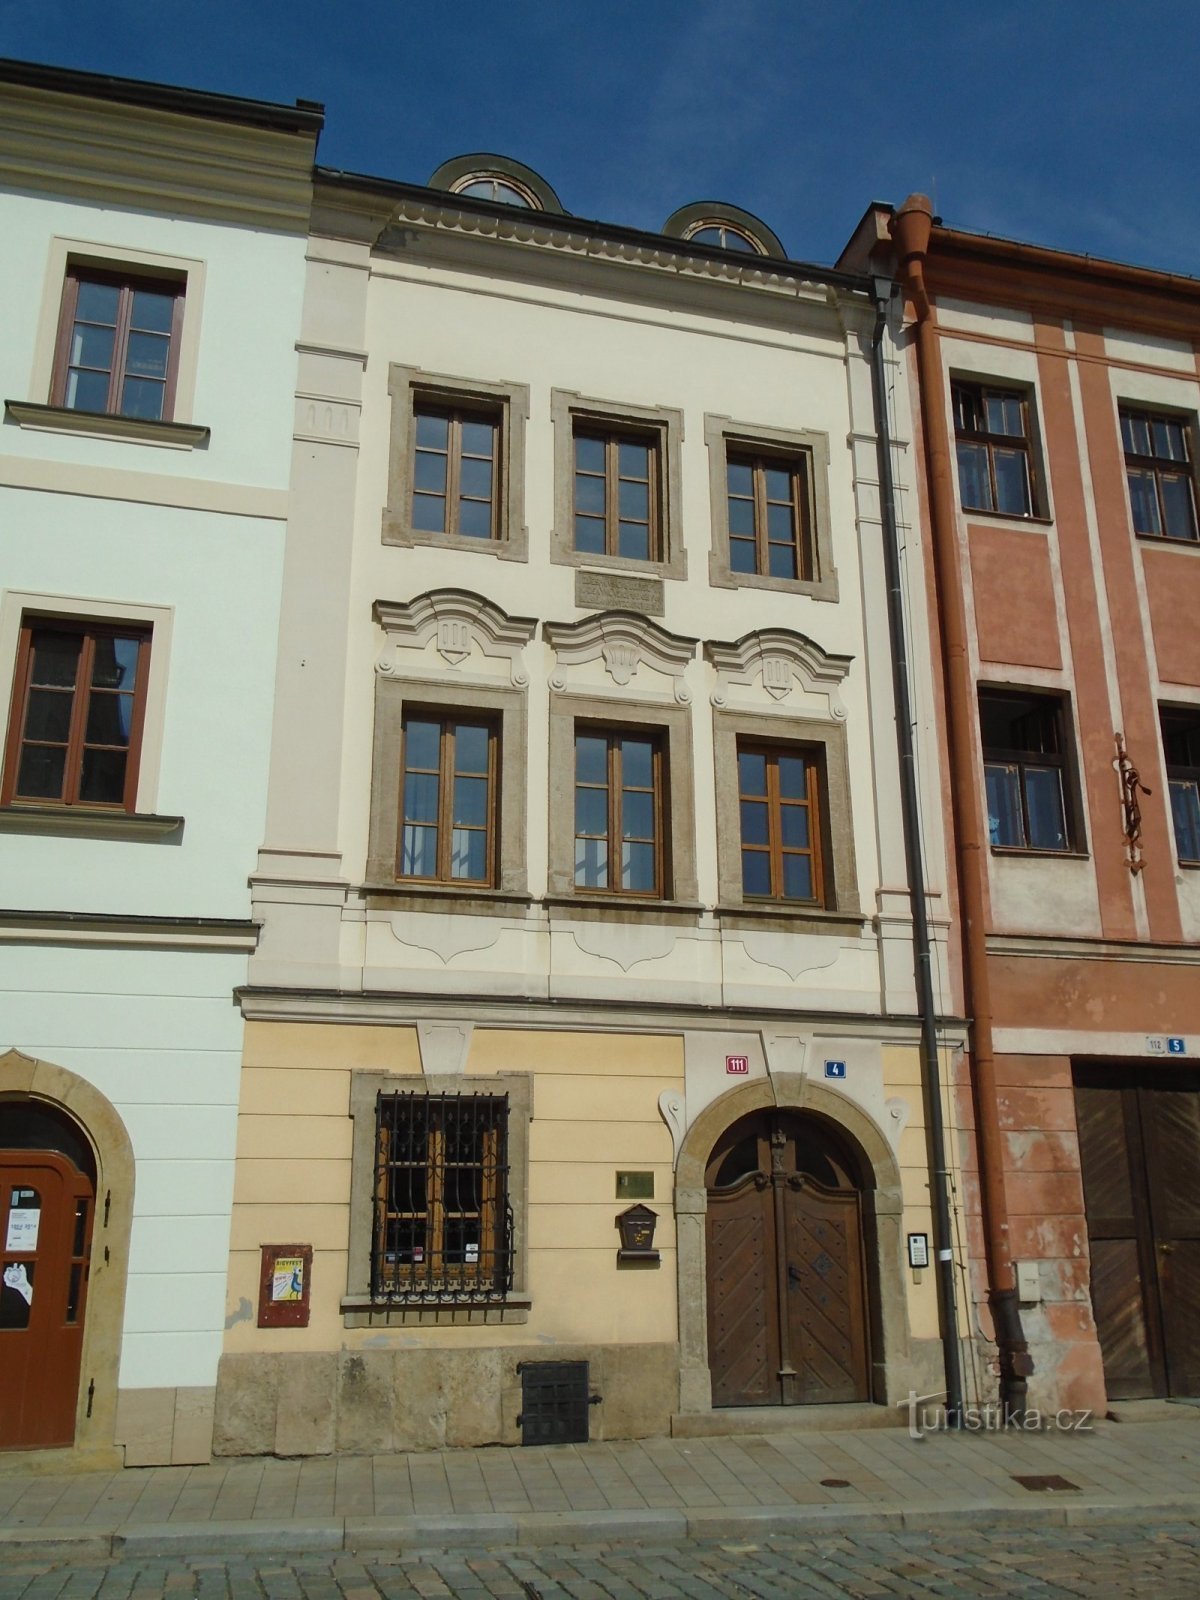 Malé náměstí n.111 (Hradec Králové, 16.9.2018 aprile XNUMX)